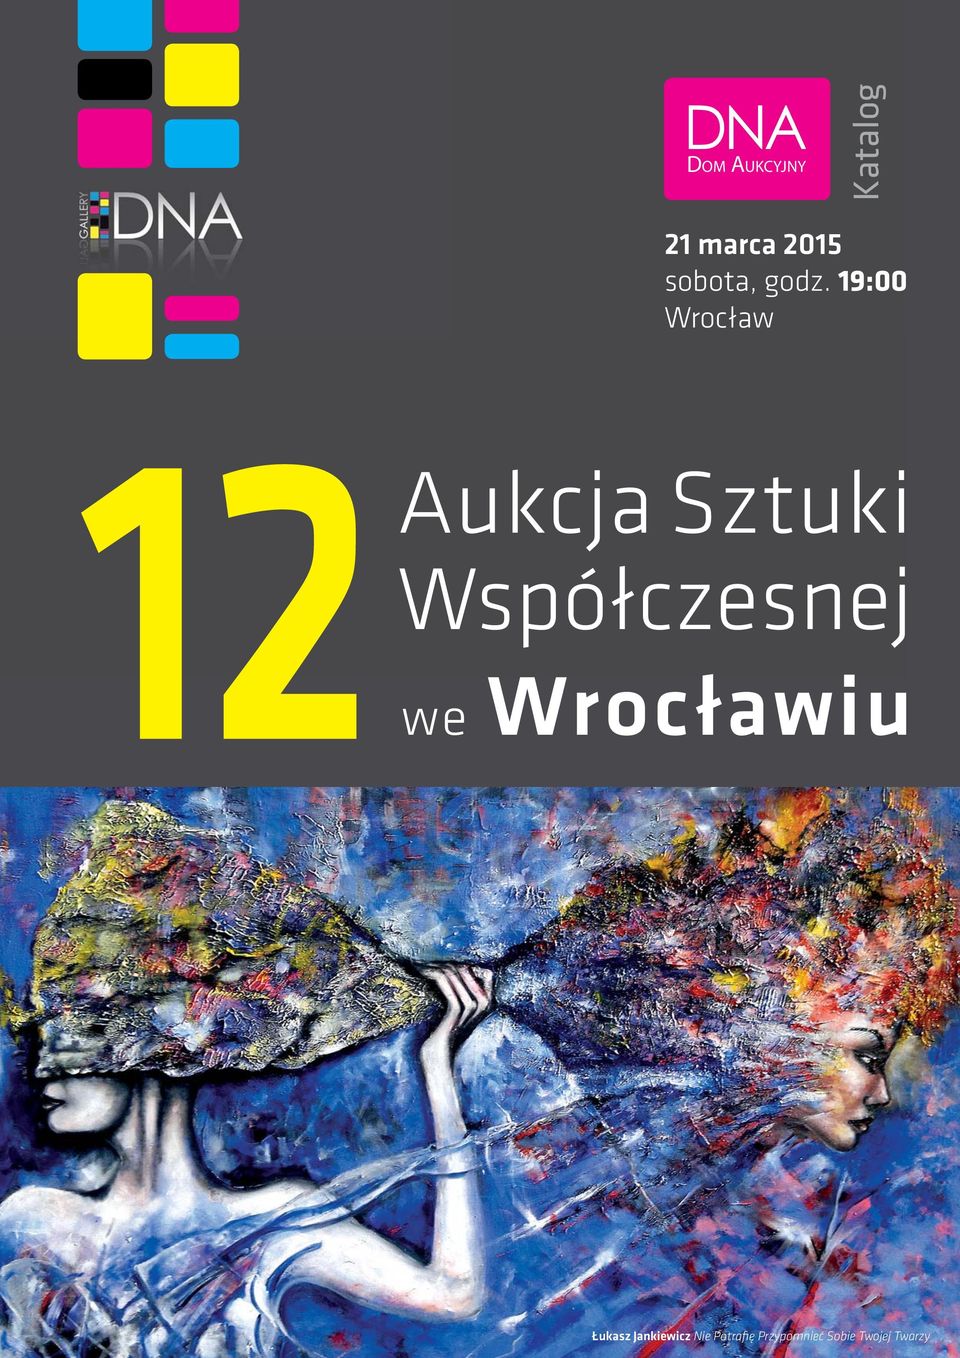 19:00 Wrocław Aukcja Sztuki Współczesnej